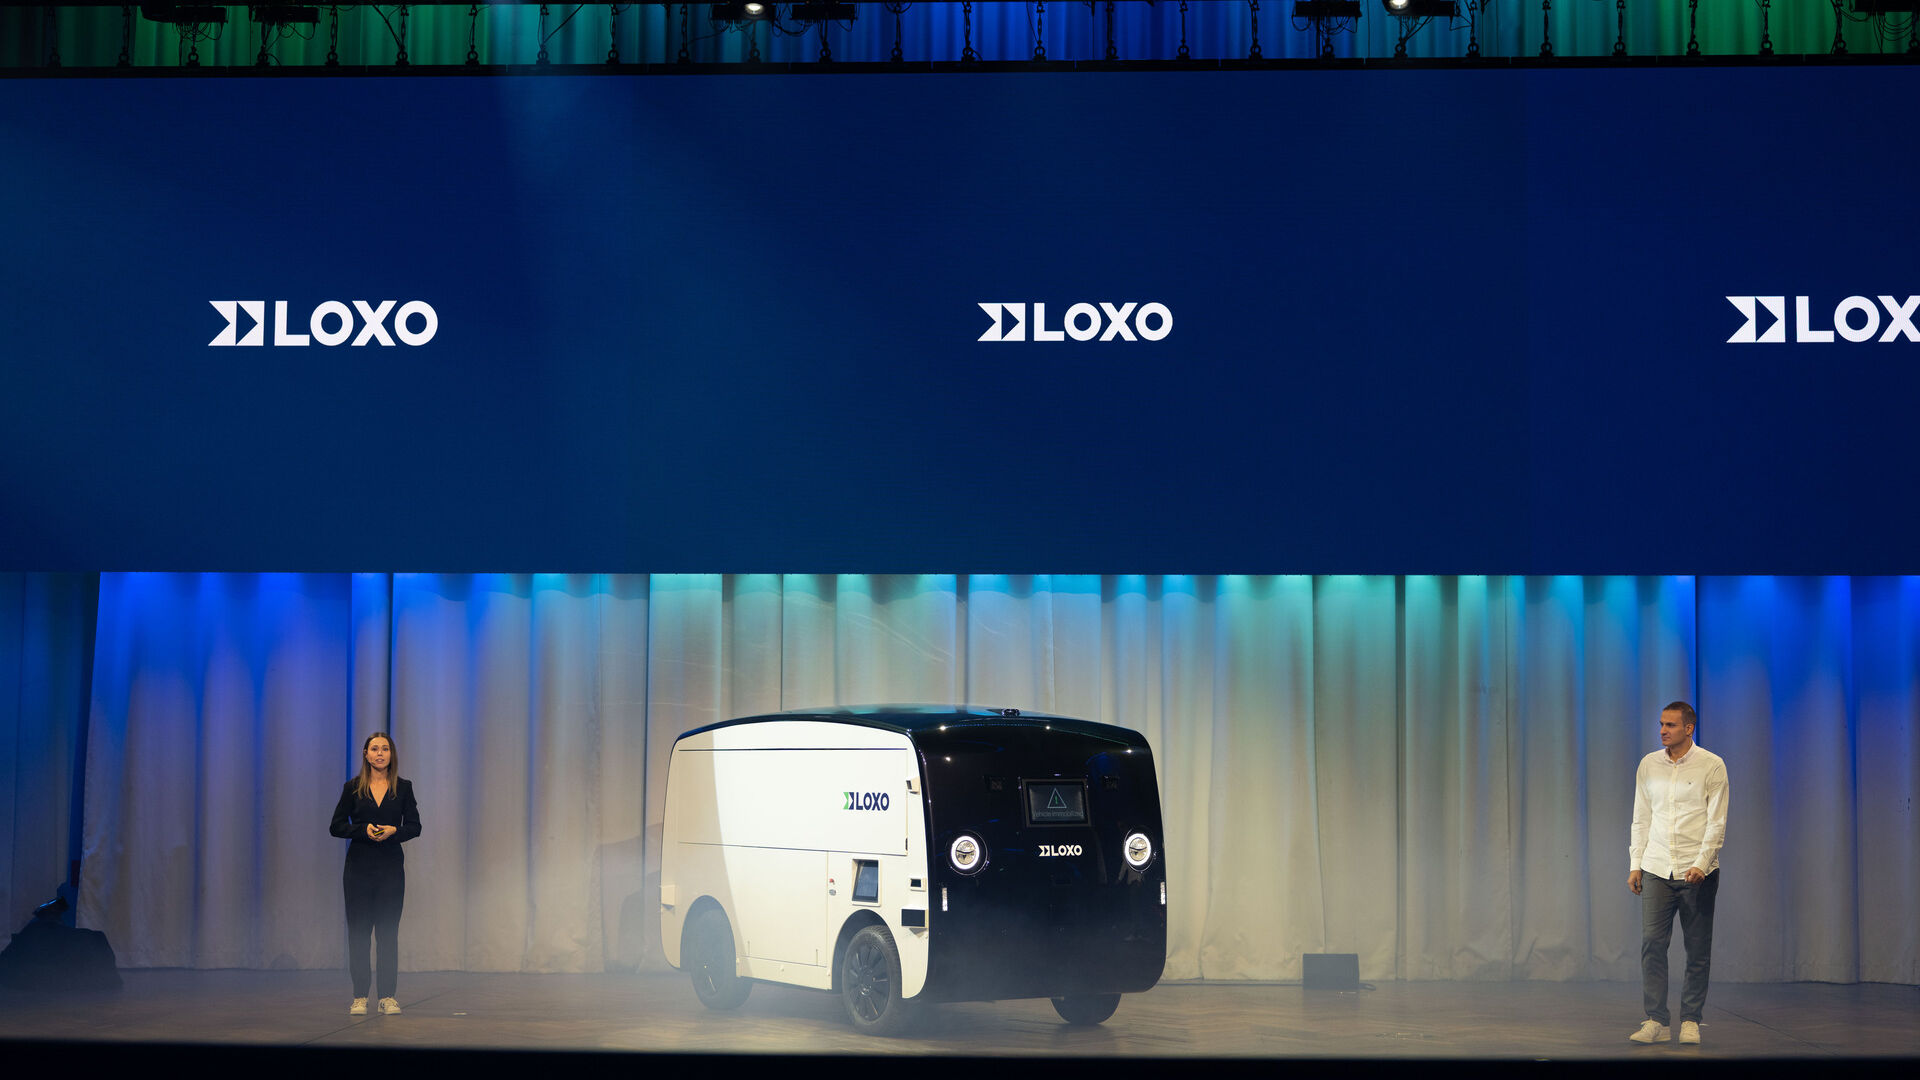 LOXO: Alpha je samovozeći kombi napravljen u cijelosti u Švicarskoj i predstavljen 6. decembra 2022. u Kursaal-u u Bernu na konferenciji za novinare start-up-a LOXO